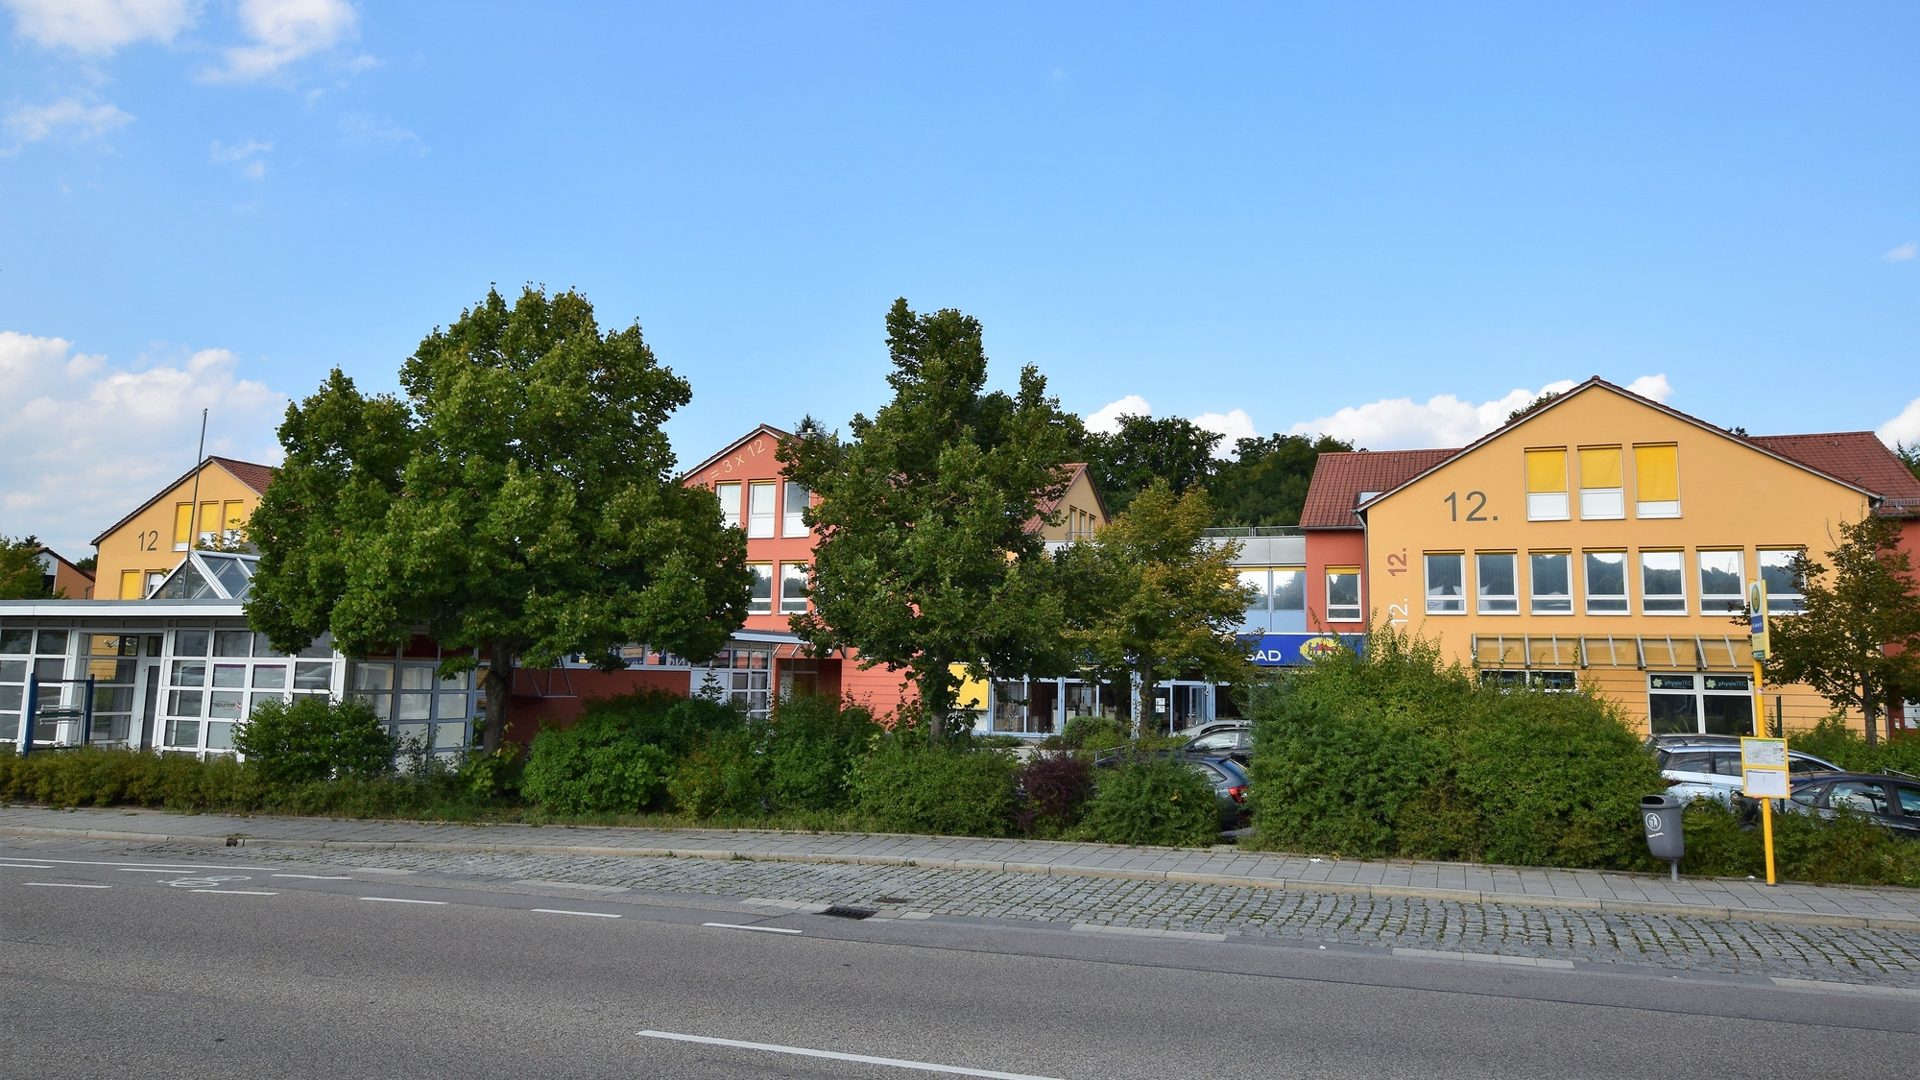 Immobilienangebot - Regensburg / Ziegetsdorf - Alle - GESCHÄFTSGEBÄUDE MIT GROSSEM GRUNDSTÜCK
5 % RENDITE GARANTIERT